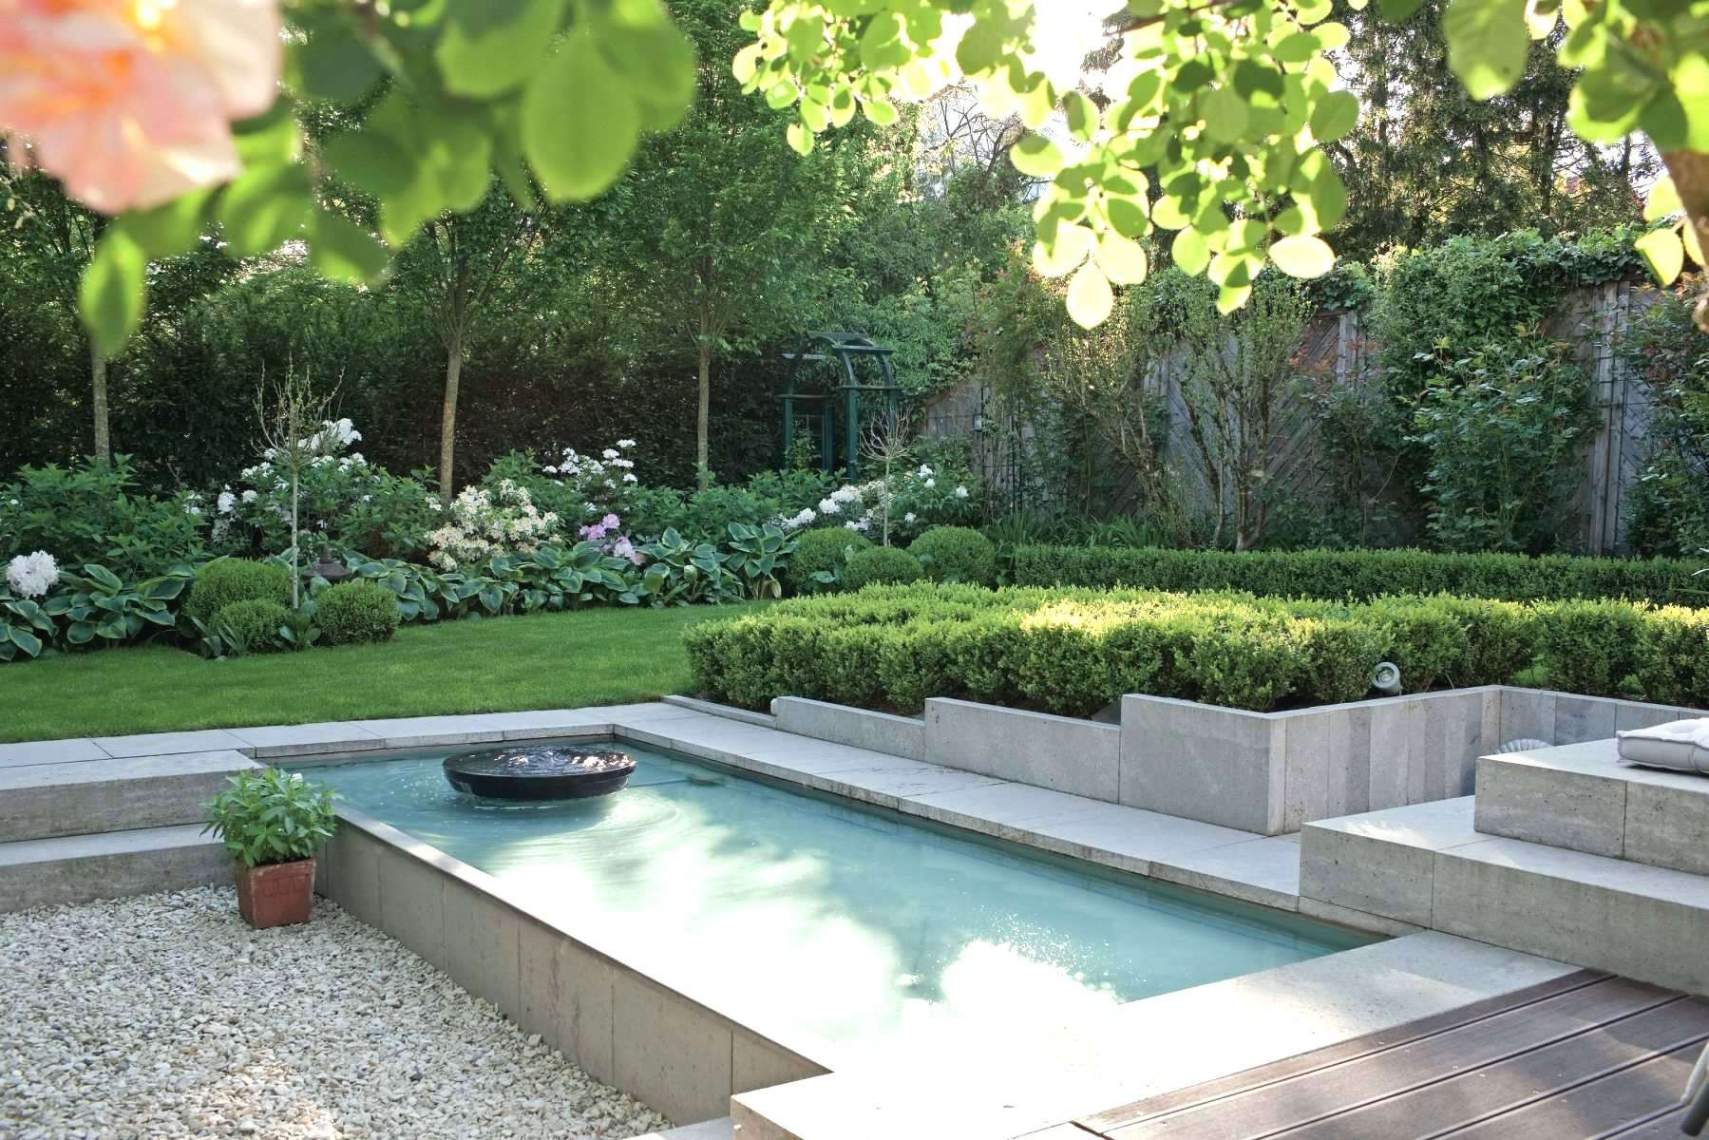 Hydroponischer Garten Best Of 27 Luxus Garten Landschaftsbau Luxus